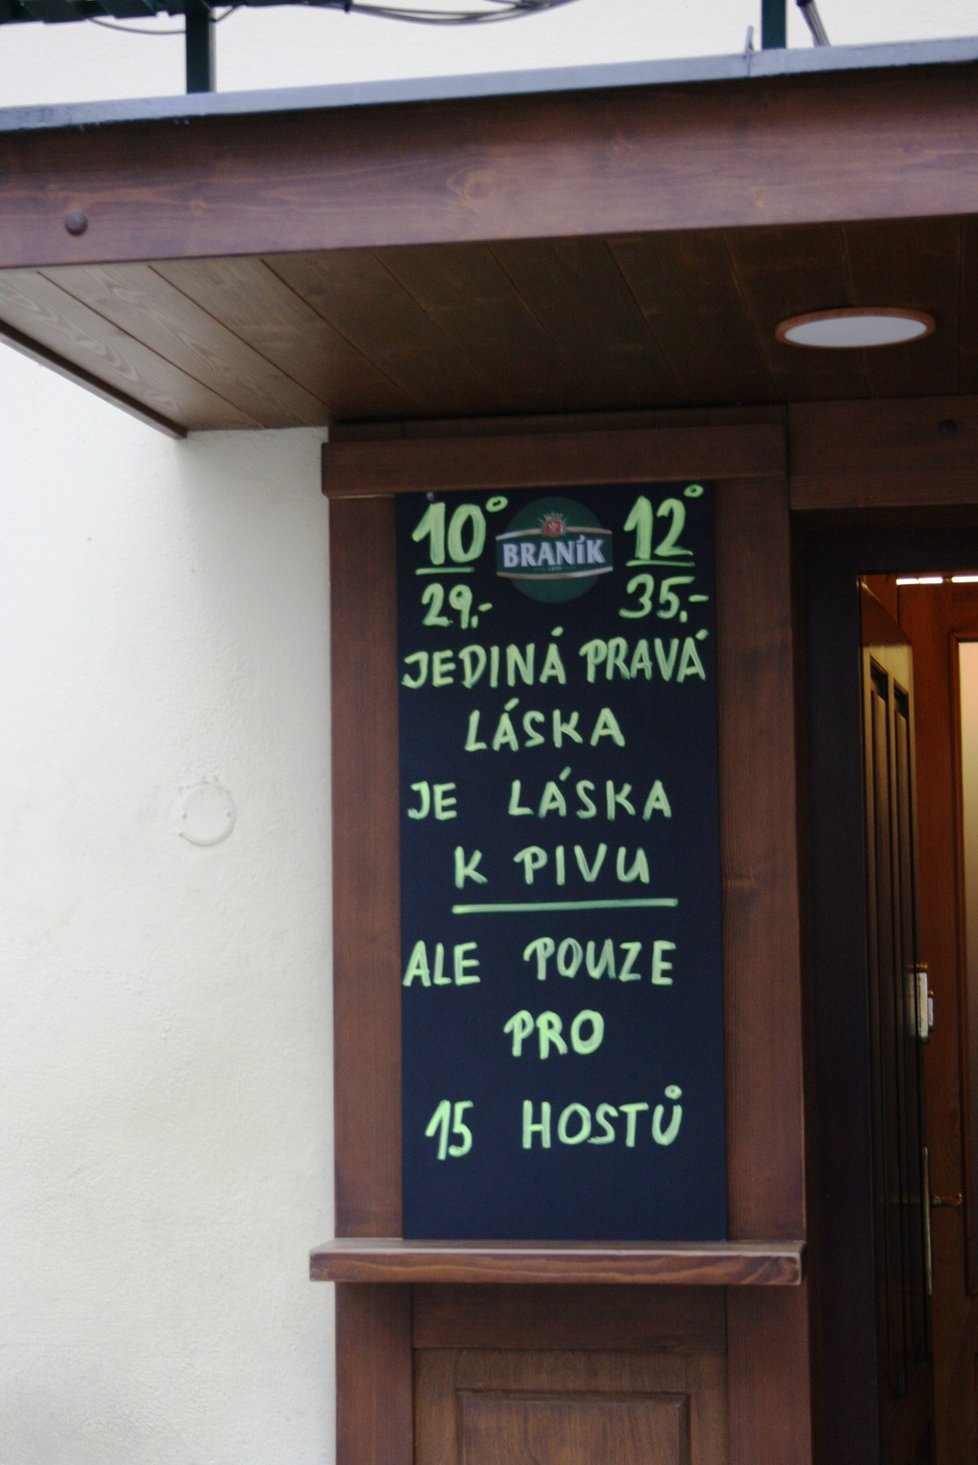 Restaurace Branická Formanka ve Vodičkově ulici v centru Prahy otevřela 3. prosince 2020 po uvolnění opatření v osm ráno.